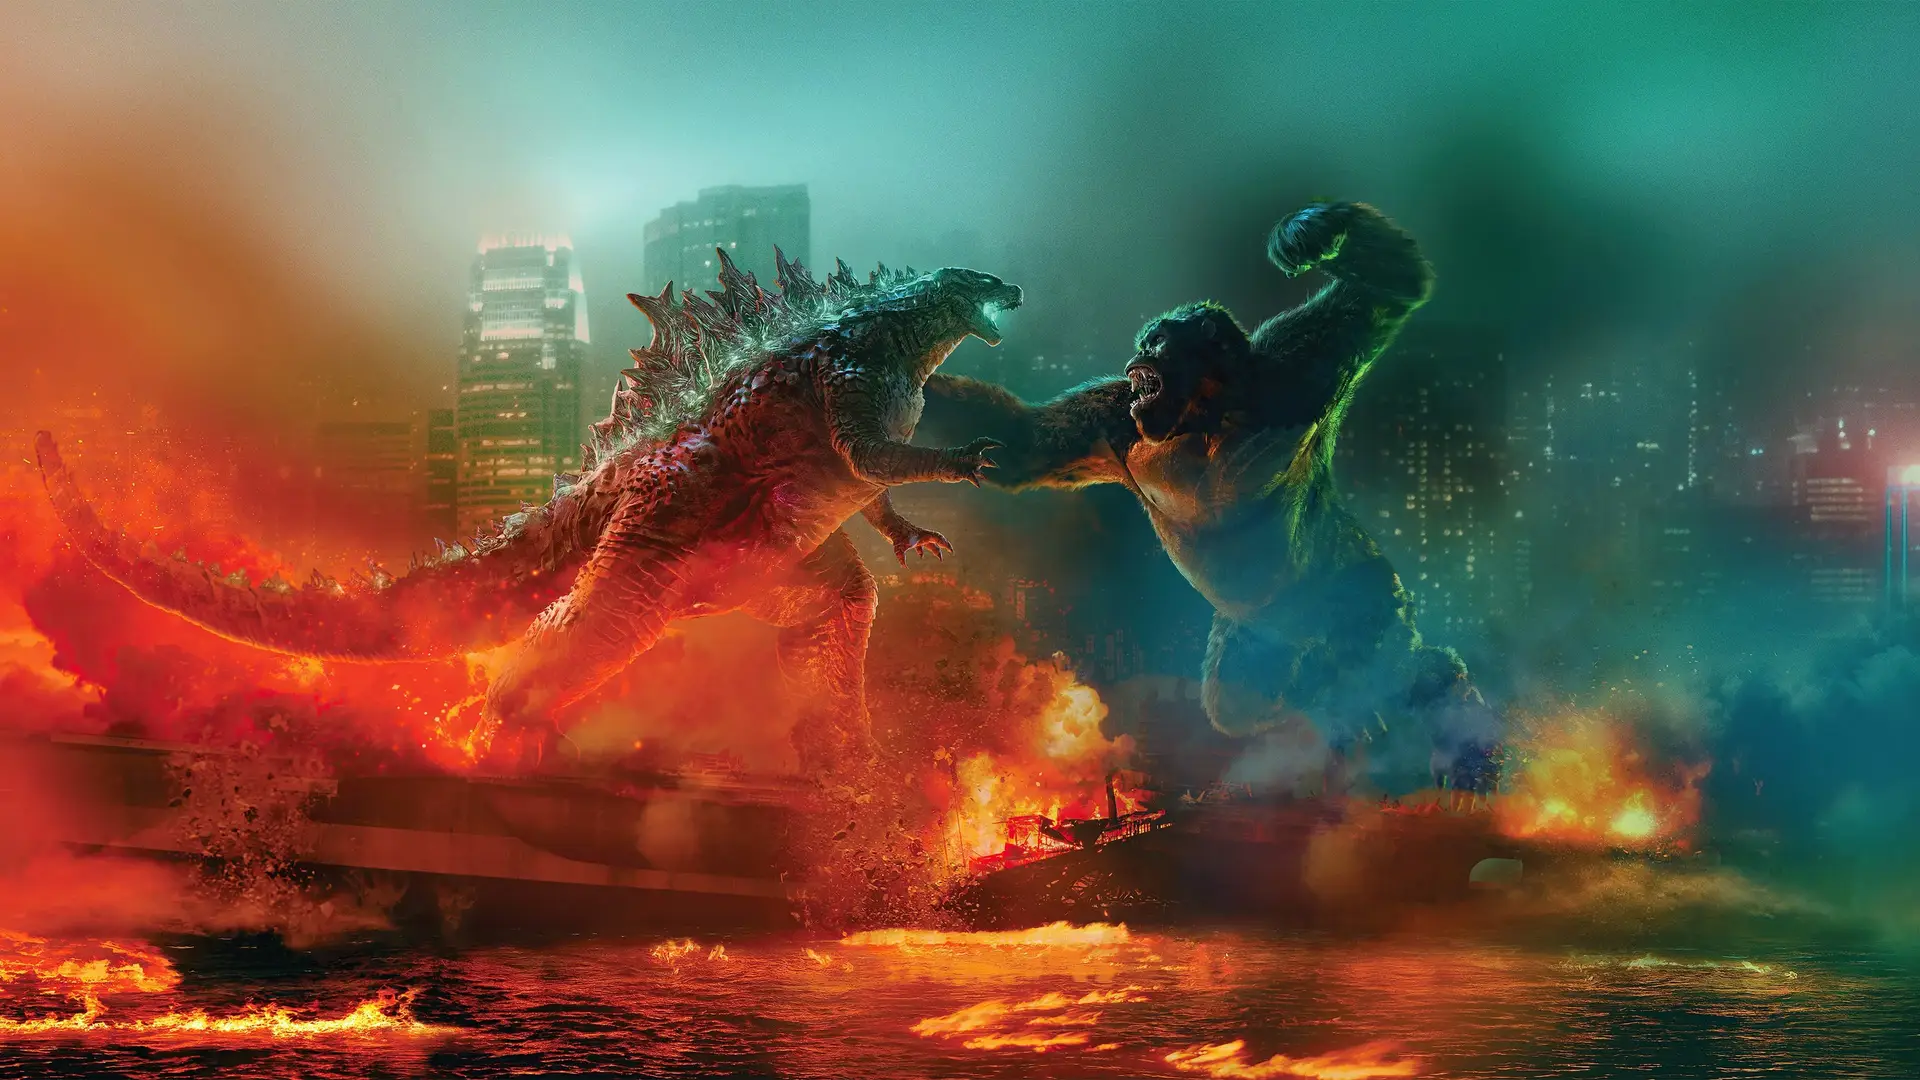 Imagen especial con las dos criaturas de la nueva pelicula de cine Godzillla VS Kong luchando